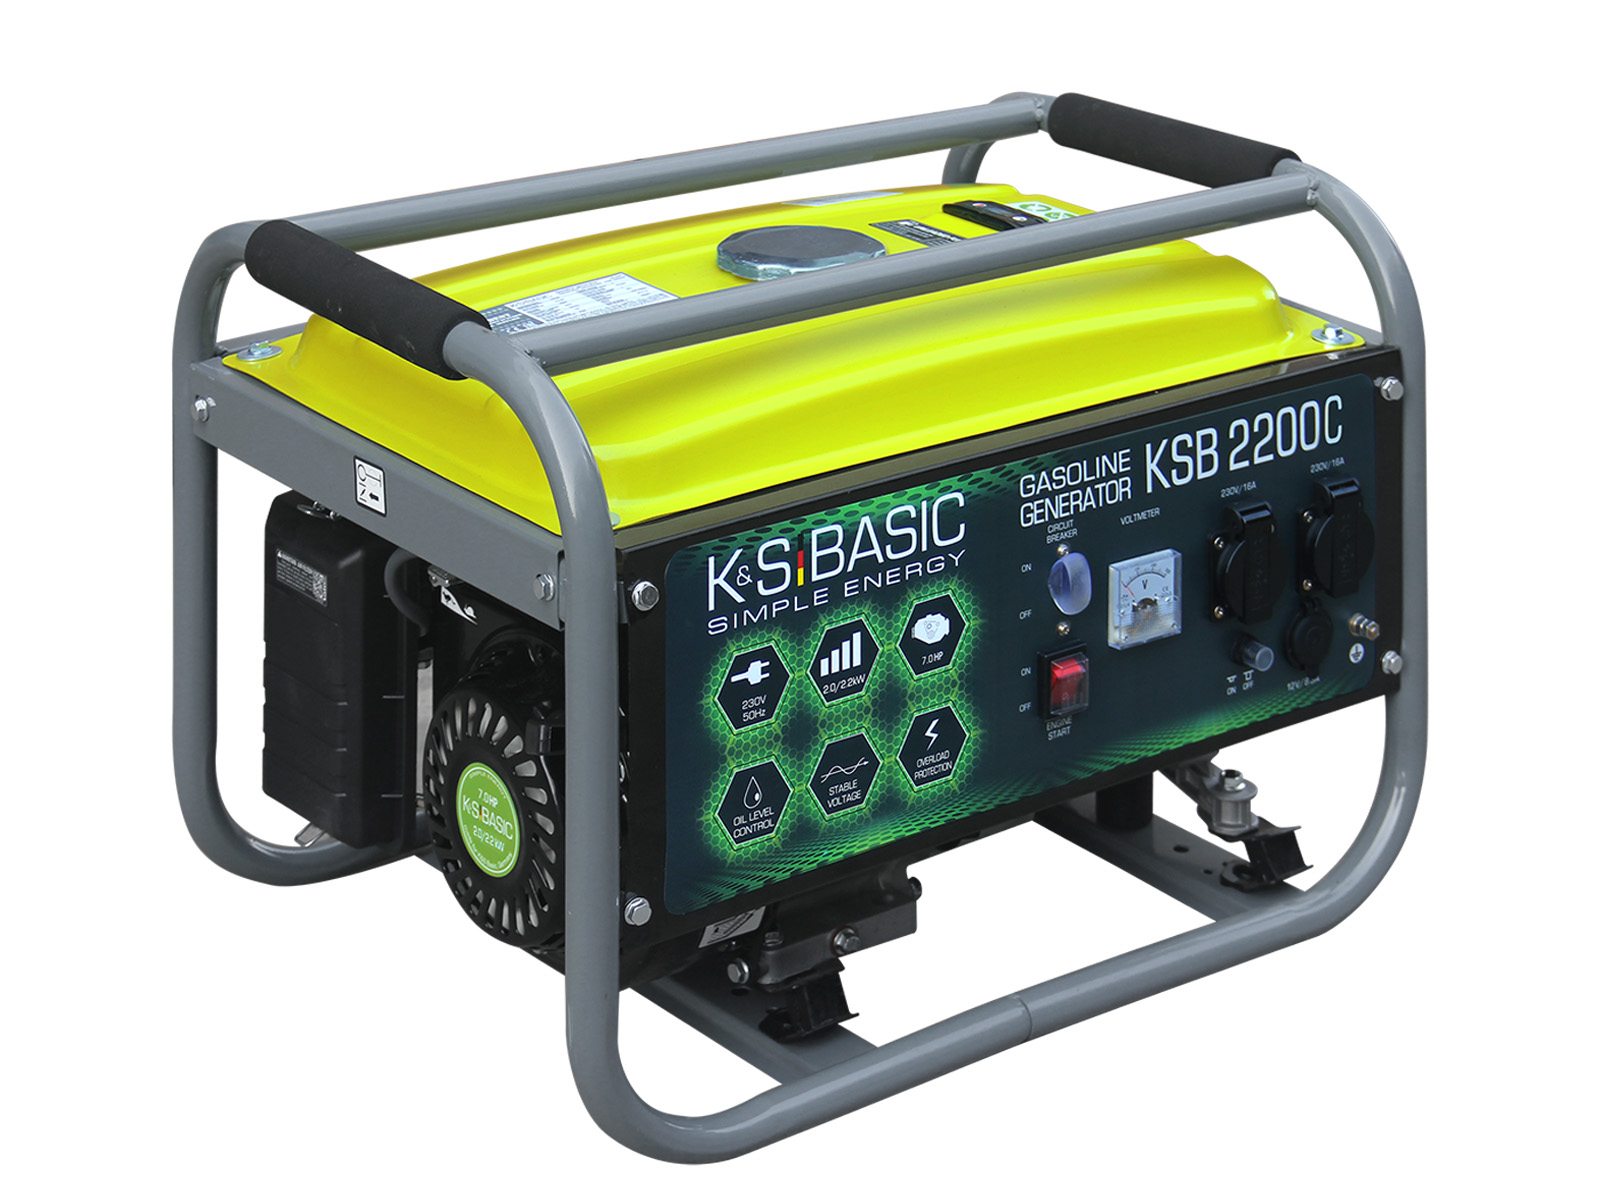 Générateur à essence KSB 2200C